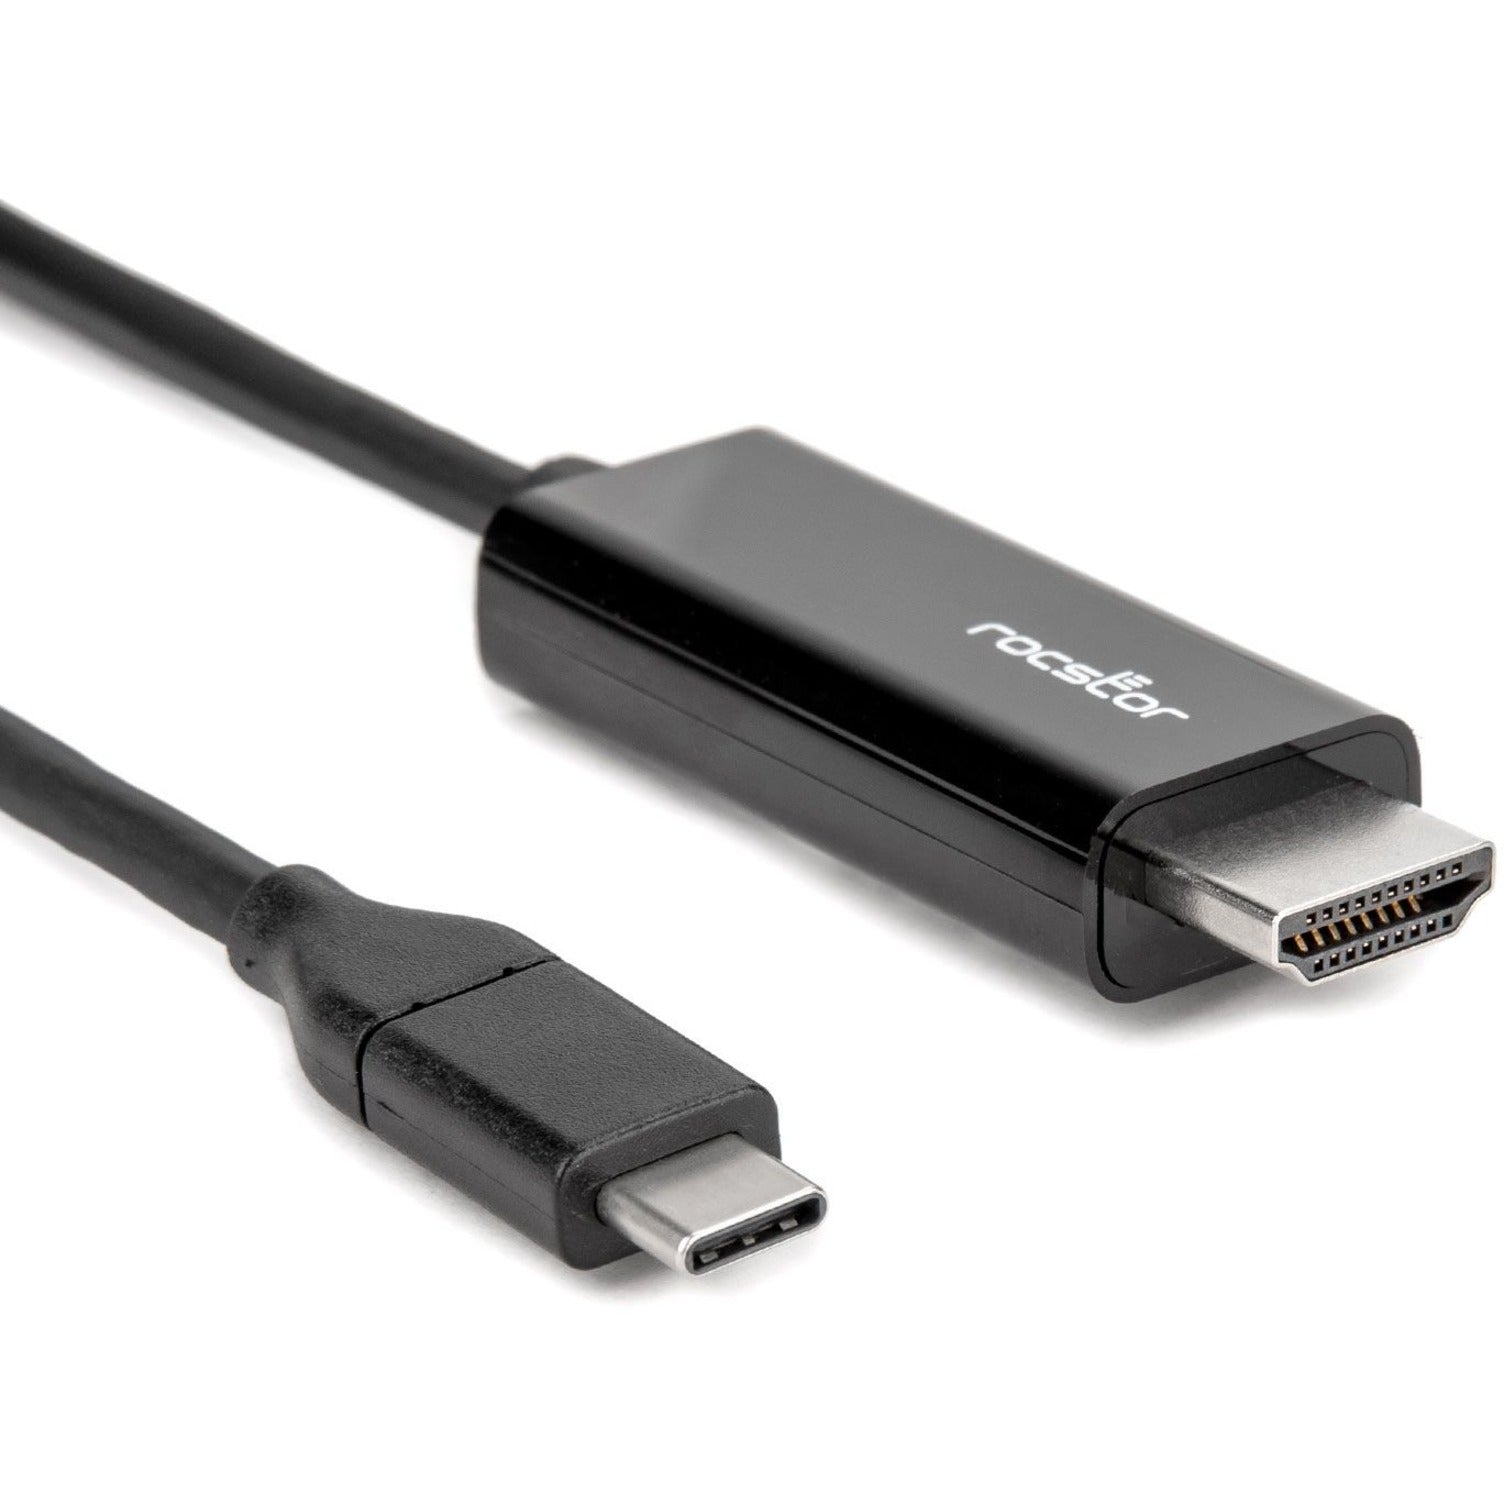 Rocstor Y10C293-B1 Premium USB-C to HDMI Kabel - 4K 60Hz Flexibel Reversible HDCP 2.2 18 m Schwarz